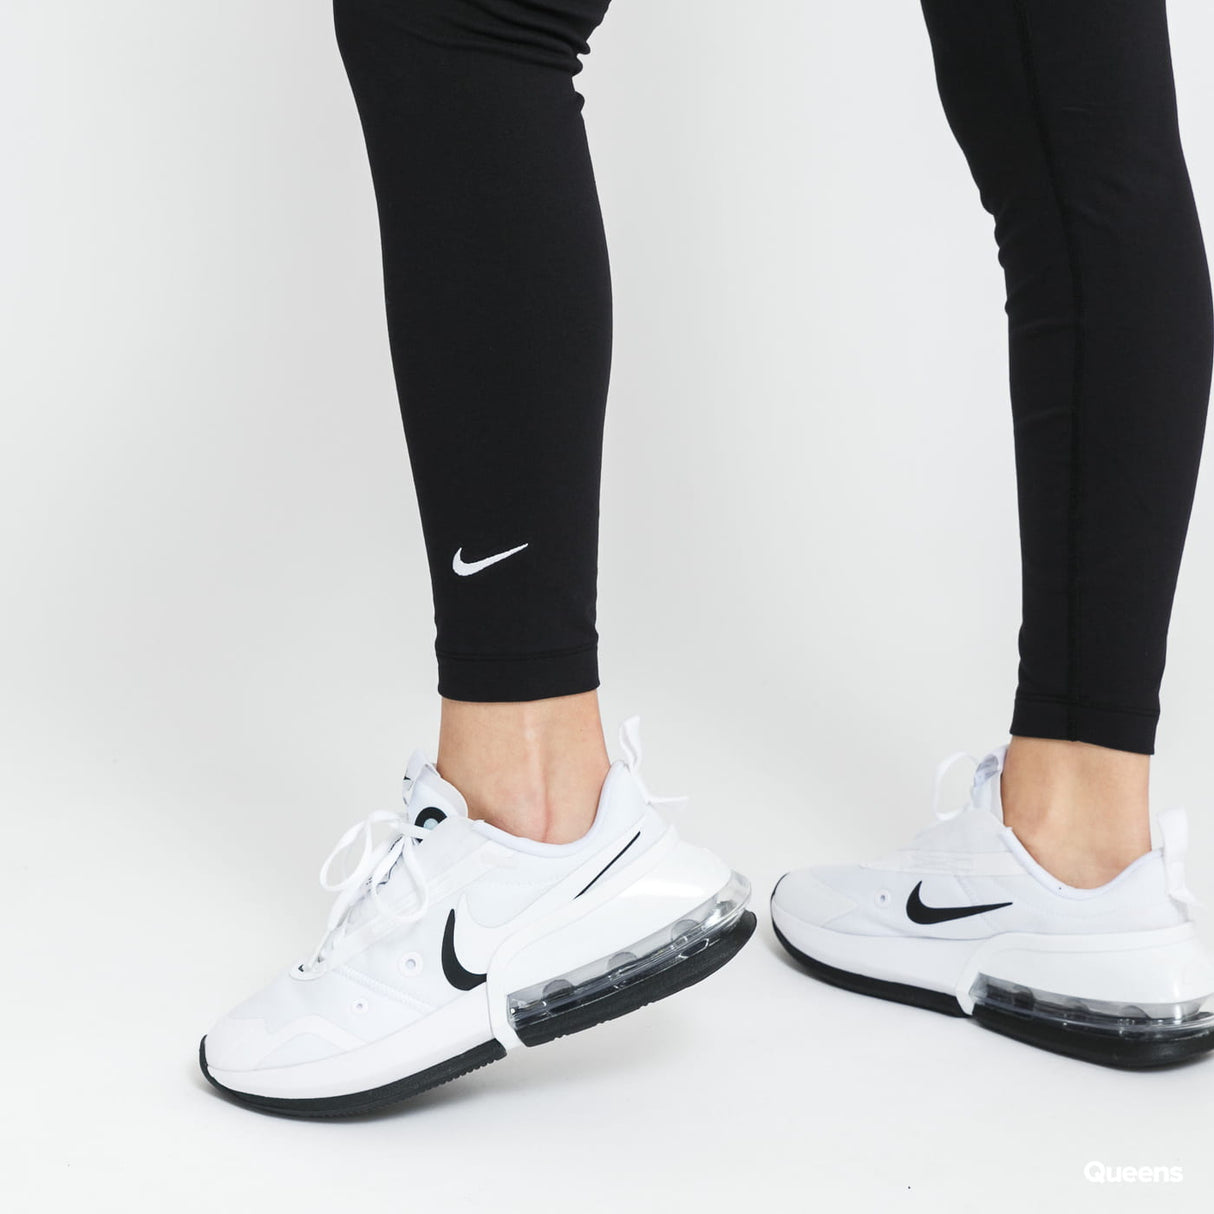 Nike Sportswear Essential Women's 7/8 Mid-Rise Leggings